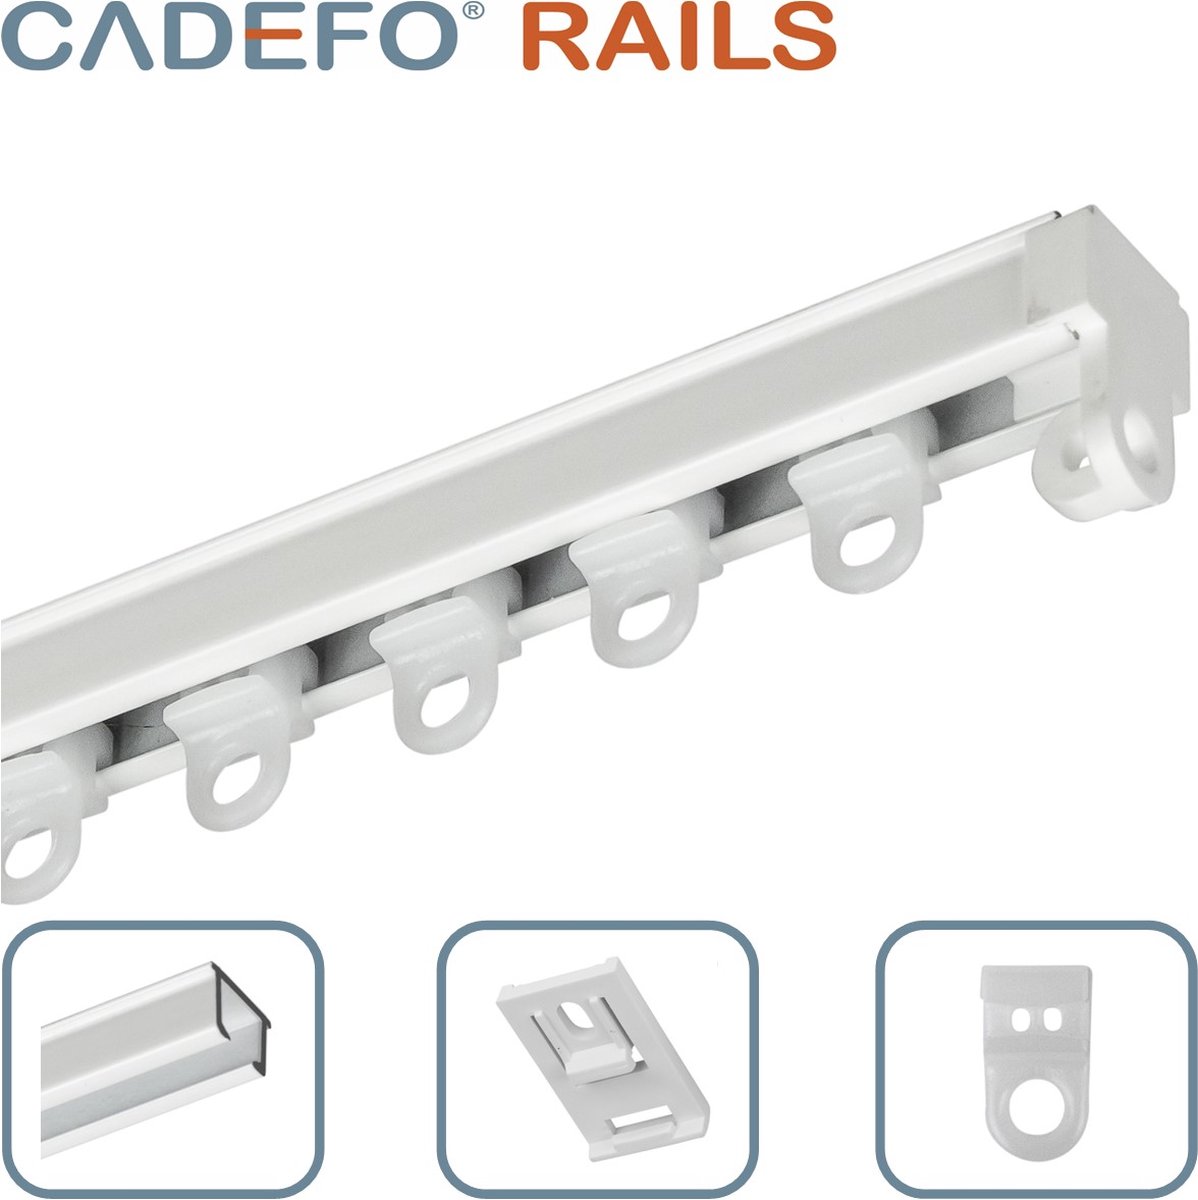 CADEFO RAILS (501 - 550 cm) Gordijnrails - Compleet op maat! - UIT 1 STUK - Leverbaar tot 6 meter - Plafondbevestiging - Lengte 506 cm